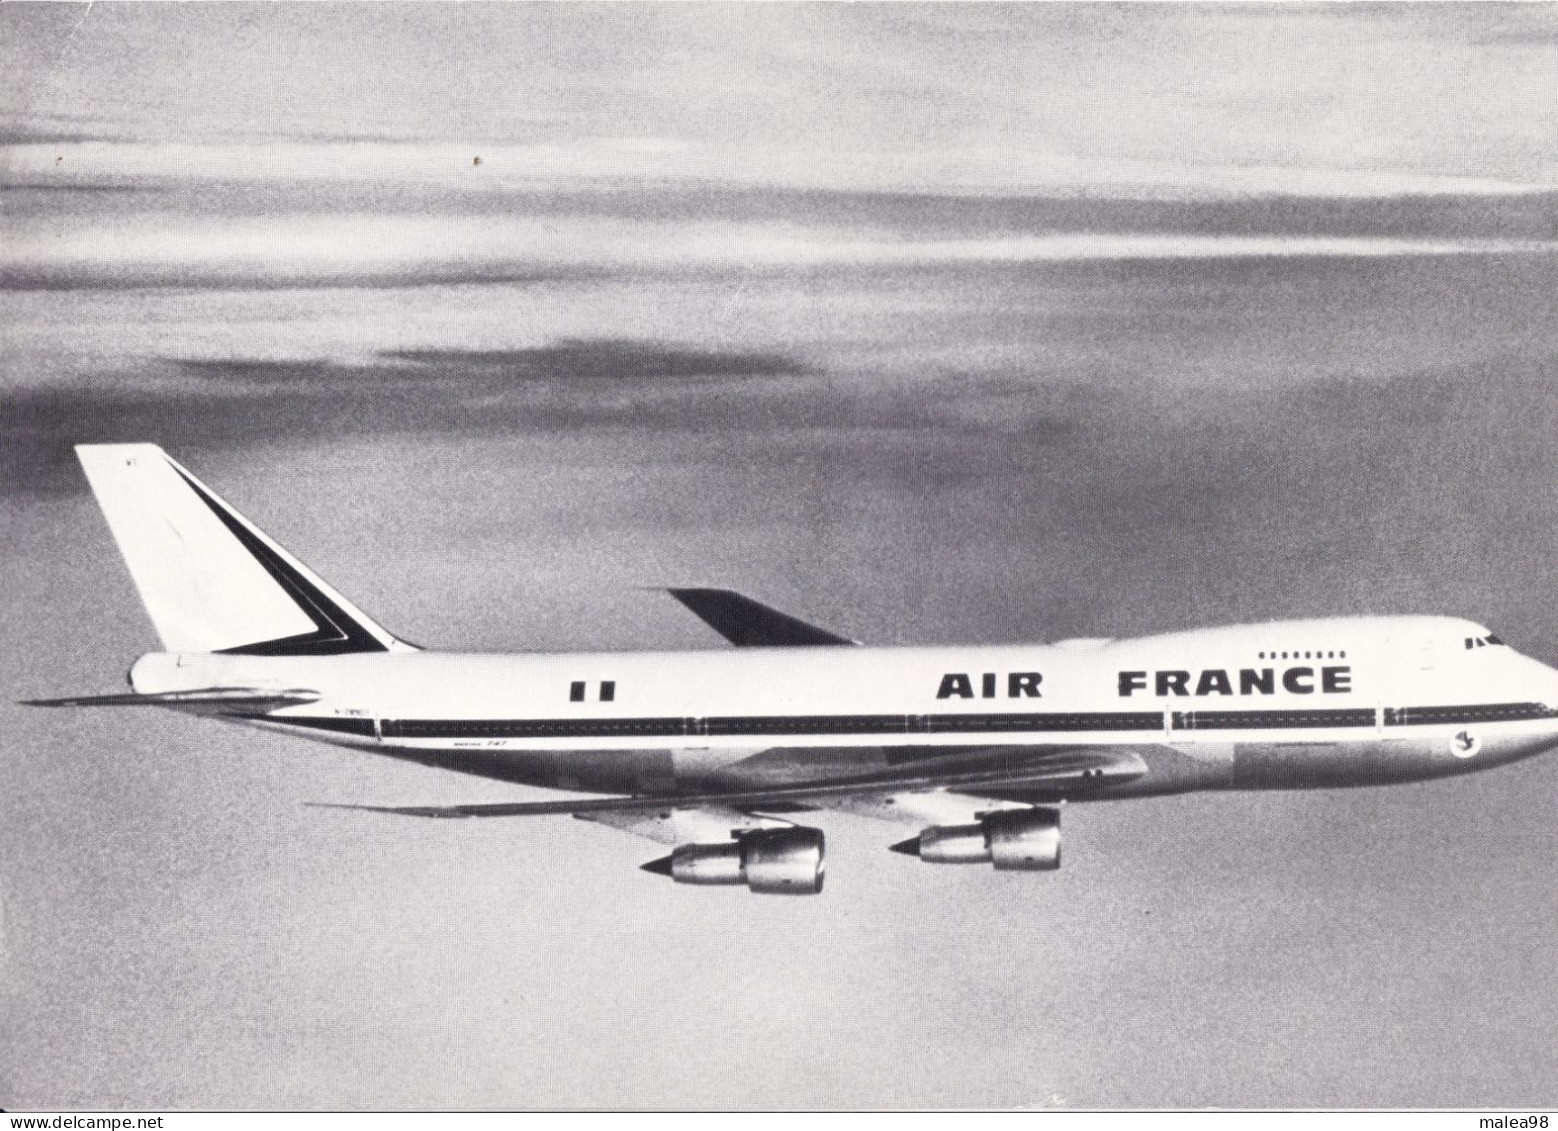 BOEING  747   FICHE TECHNIQUE PUBLIEE PAR SERVICE TECHNIQUE AIR FRANCE EN 1974 - Figuras Desolladas